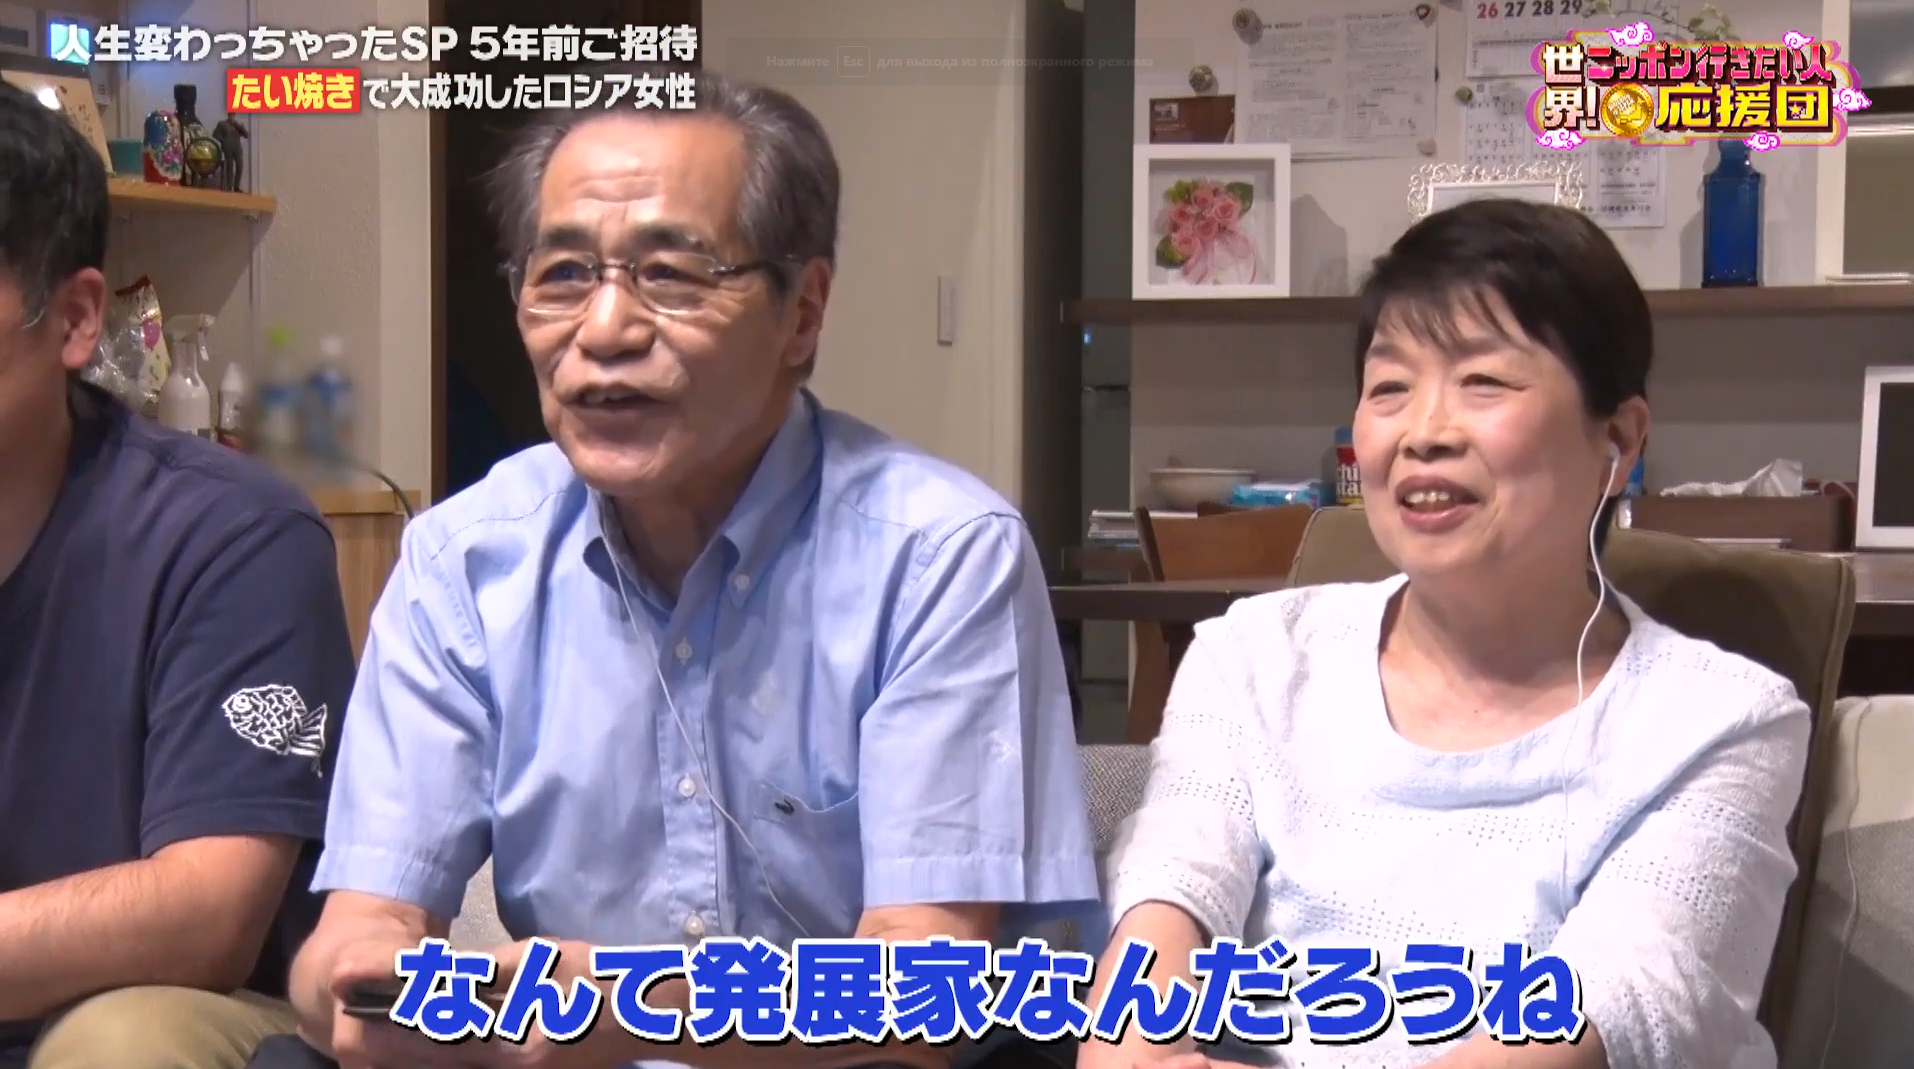 Кадр из видео: Озава Юичи-сан — мастер, от которого российские тайячные получили рецептуру теста для запеченых рыбок, и его семья